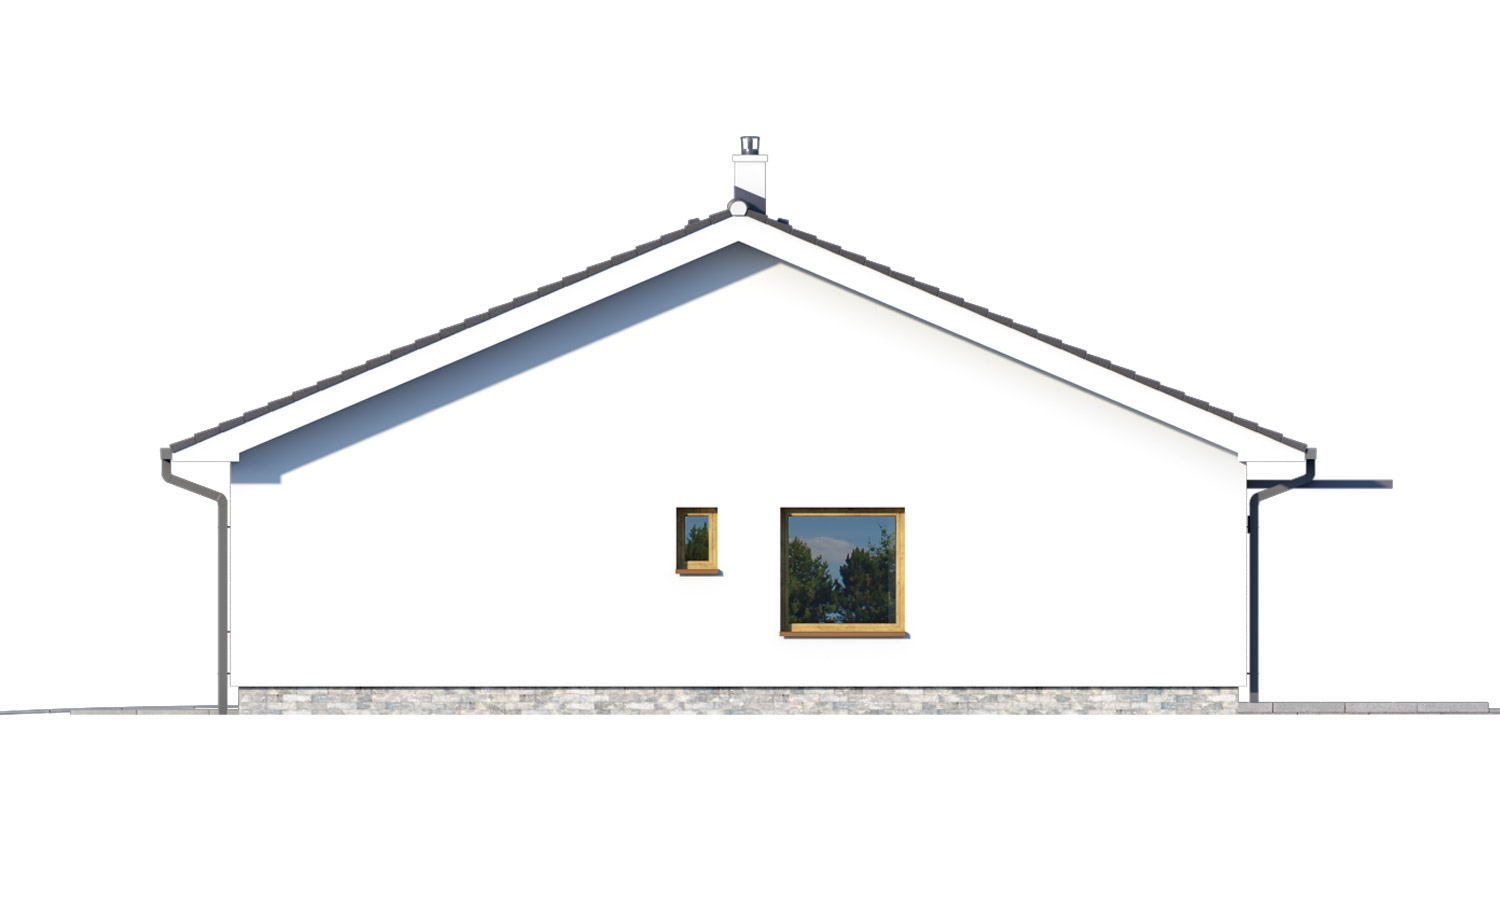 Pohľad 2. - Moderní bungalov s garáží ve tvaru U, sedlovou střechou a s pokoji orientovanými do zahrady.